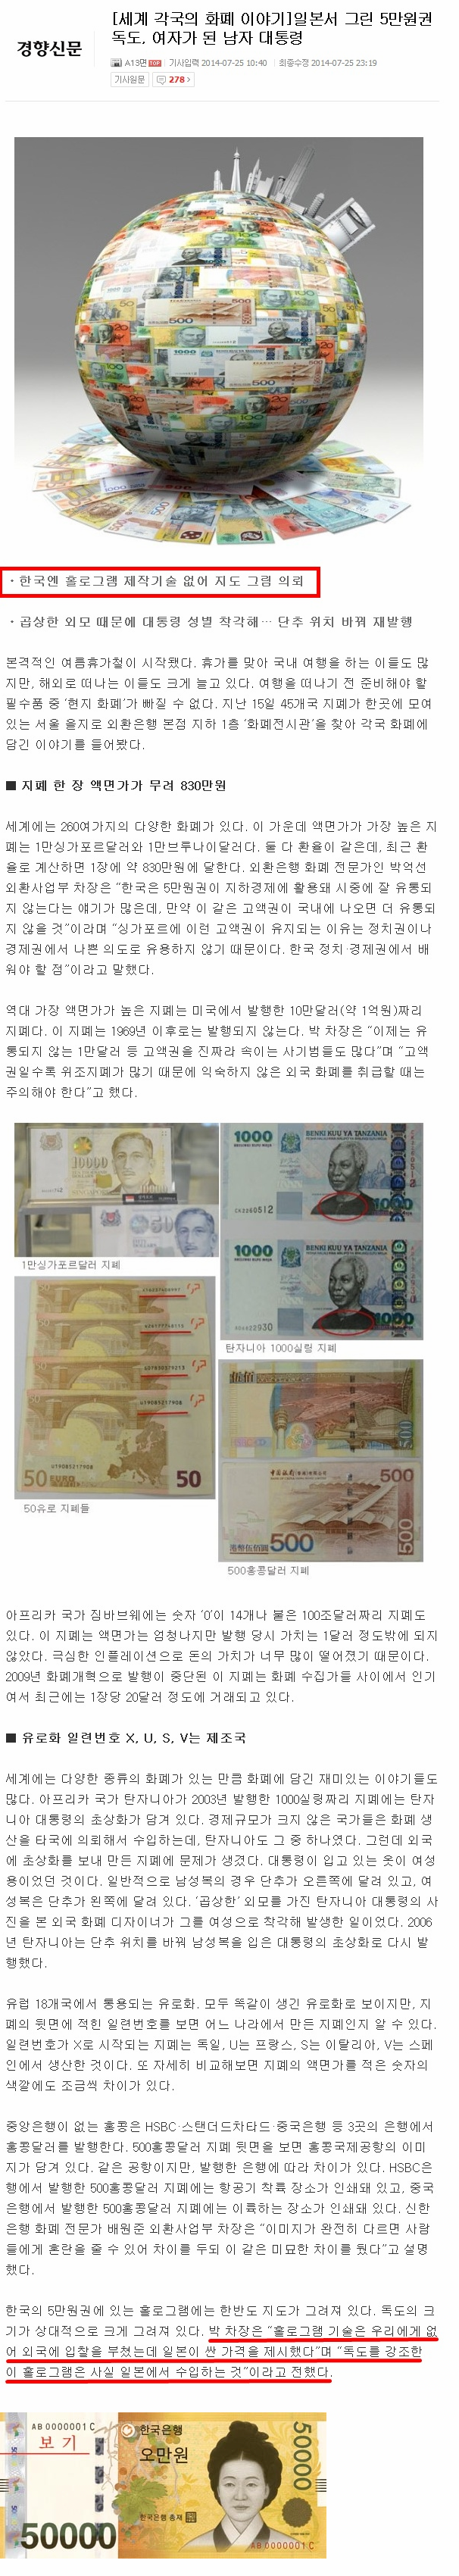 5만원권 지폐의 비밀.png